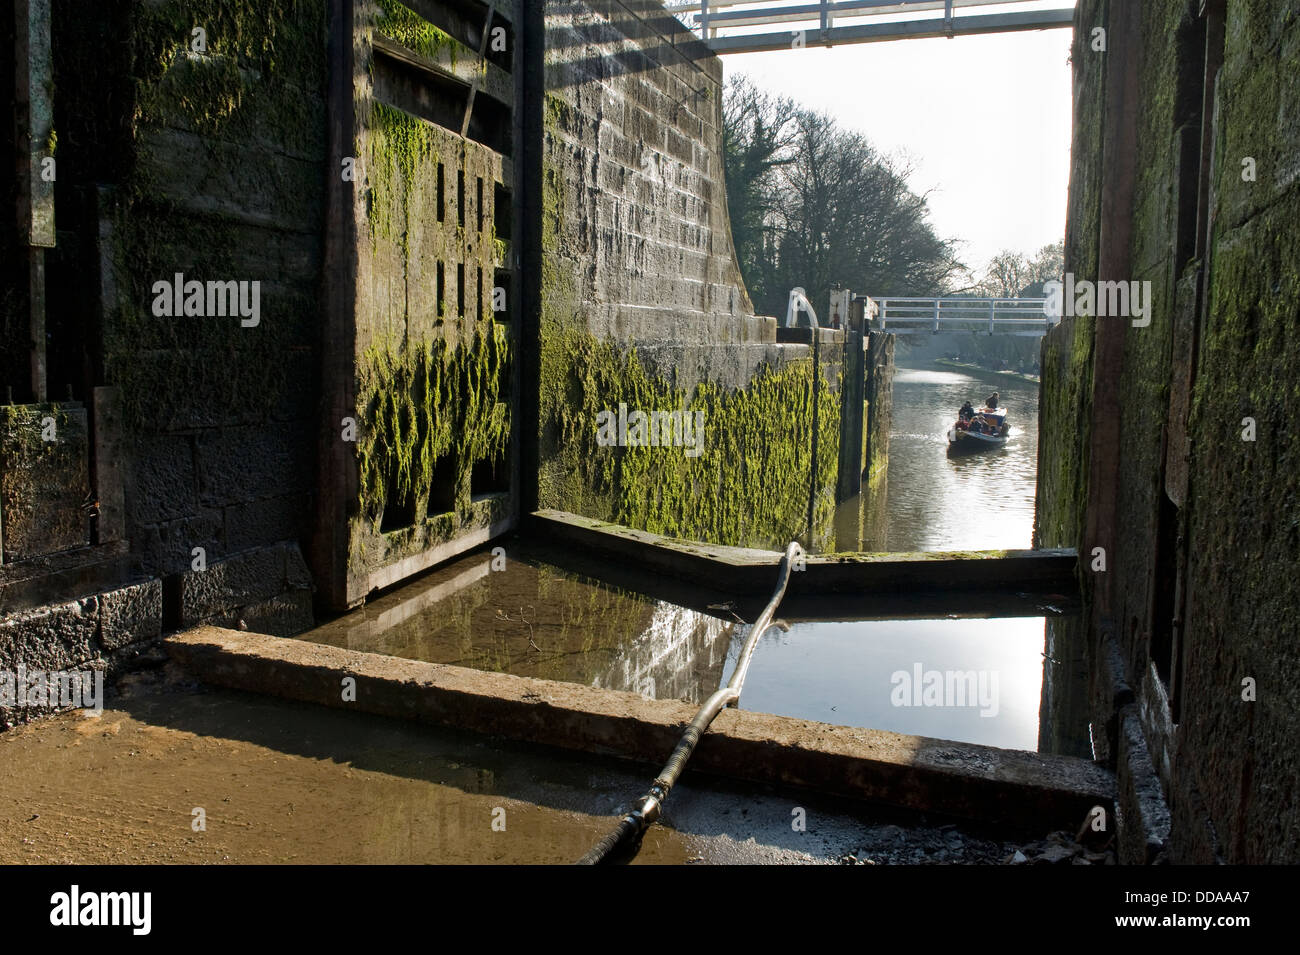 Vue depuis l'écluse drainés par portes ouvertes à canal boat - cinq écluses Montée fermée pour rénovation, Leeds Liverpool Canal, Bingley, England, UK Banque D'Images